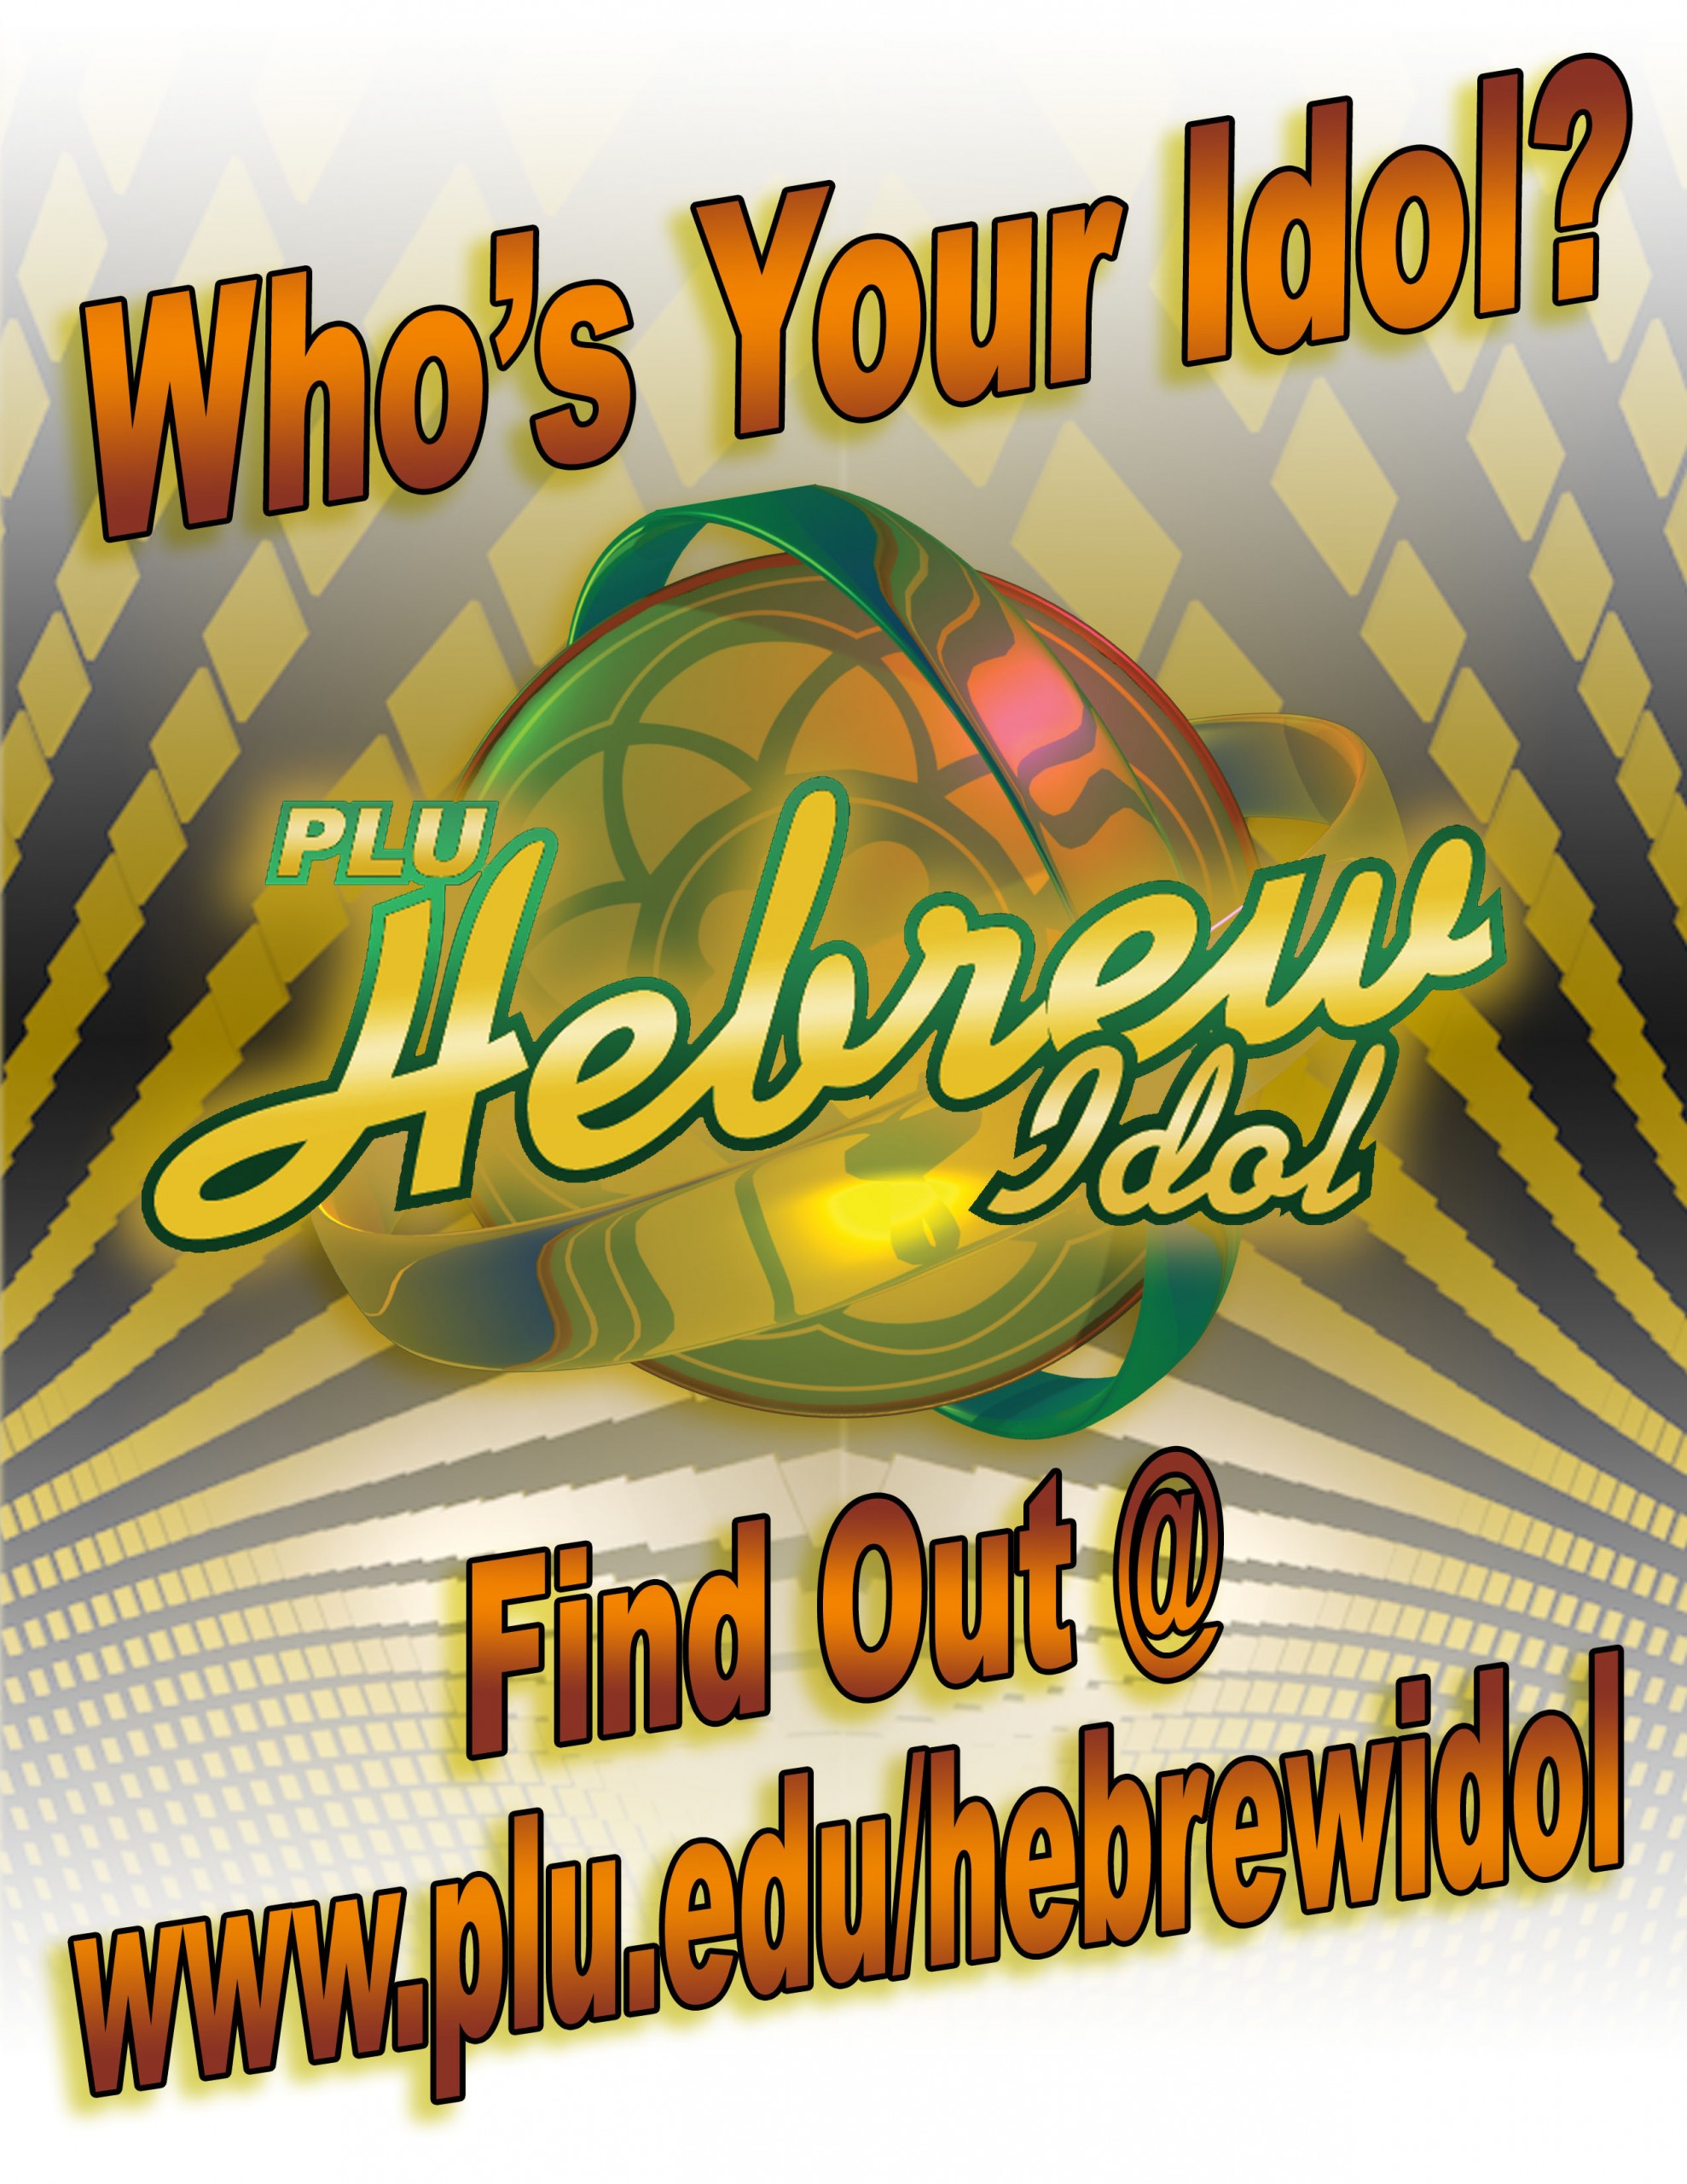 Who's Your Idol? PLU Hebrew Idol - Find out @ www.plu.edu/hebrewidol